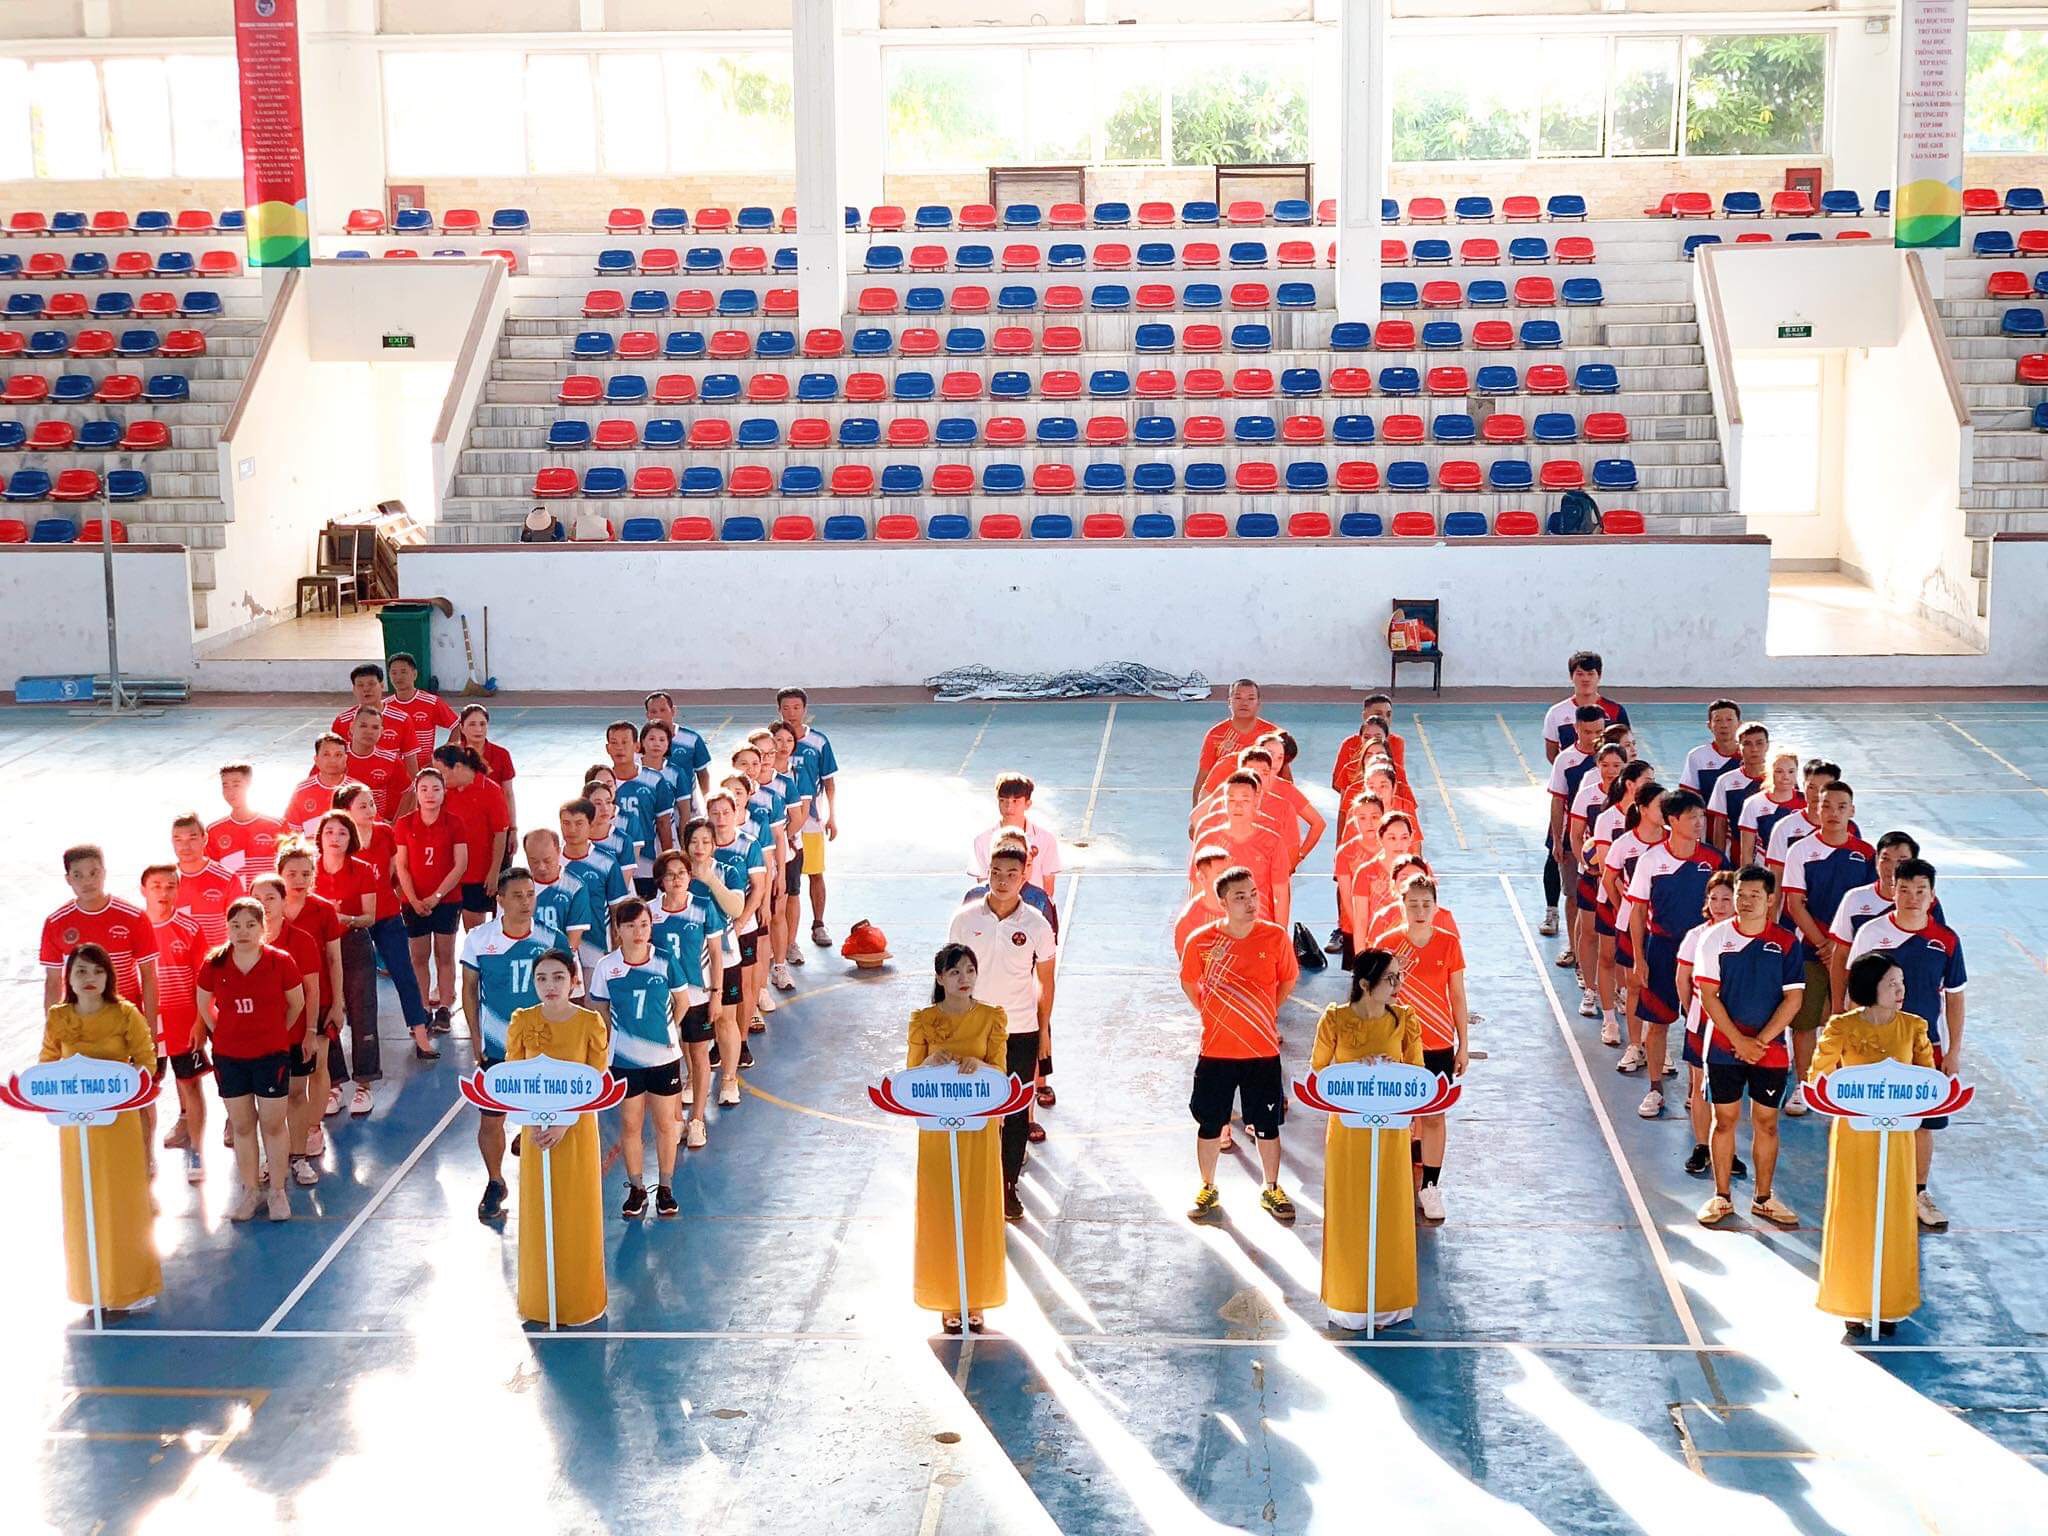 Cục Thi hành án dân sự tỉnh Nghệ An tổ chức giải thể thao toàn ngành lần thứ IV nhân dịp kỷ niệm 77 năm ngày truyền thống ngành THADS (19/7/1946 – 19/7/2023) và 30 năm chuyển giao công tác THADS (1993 – 2023)